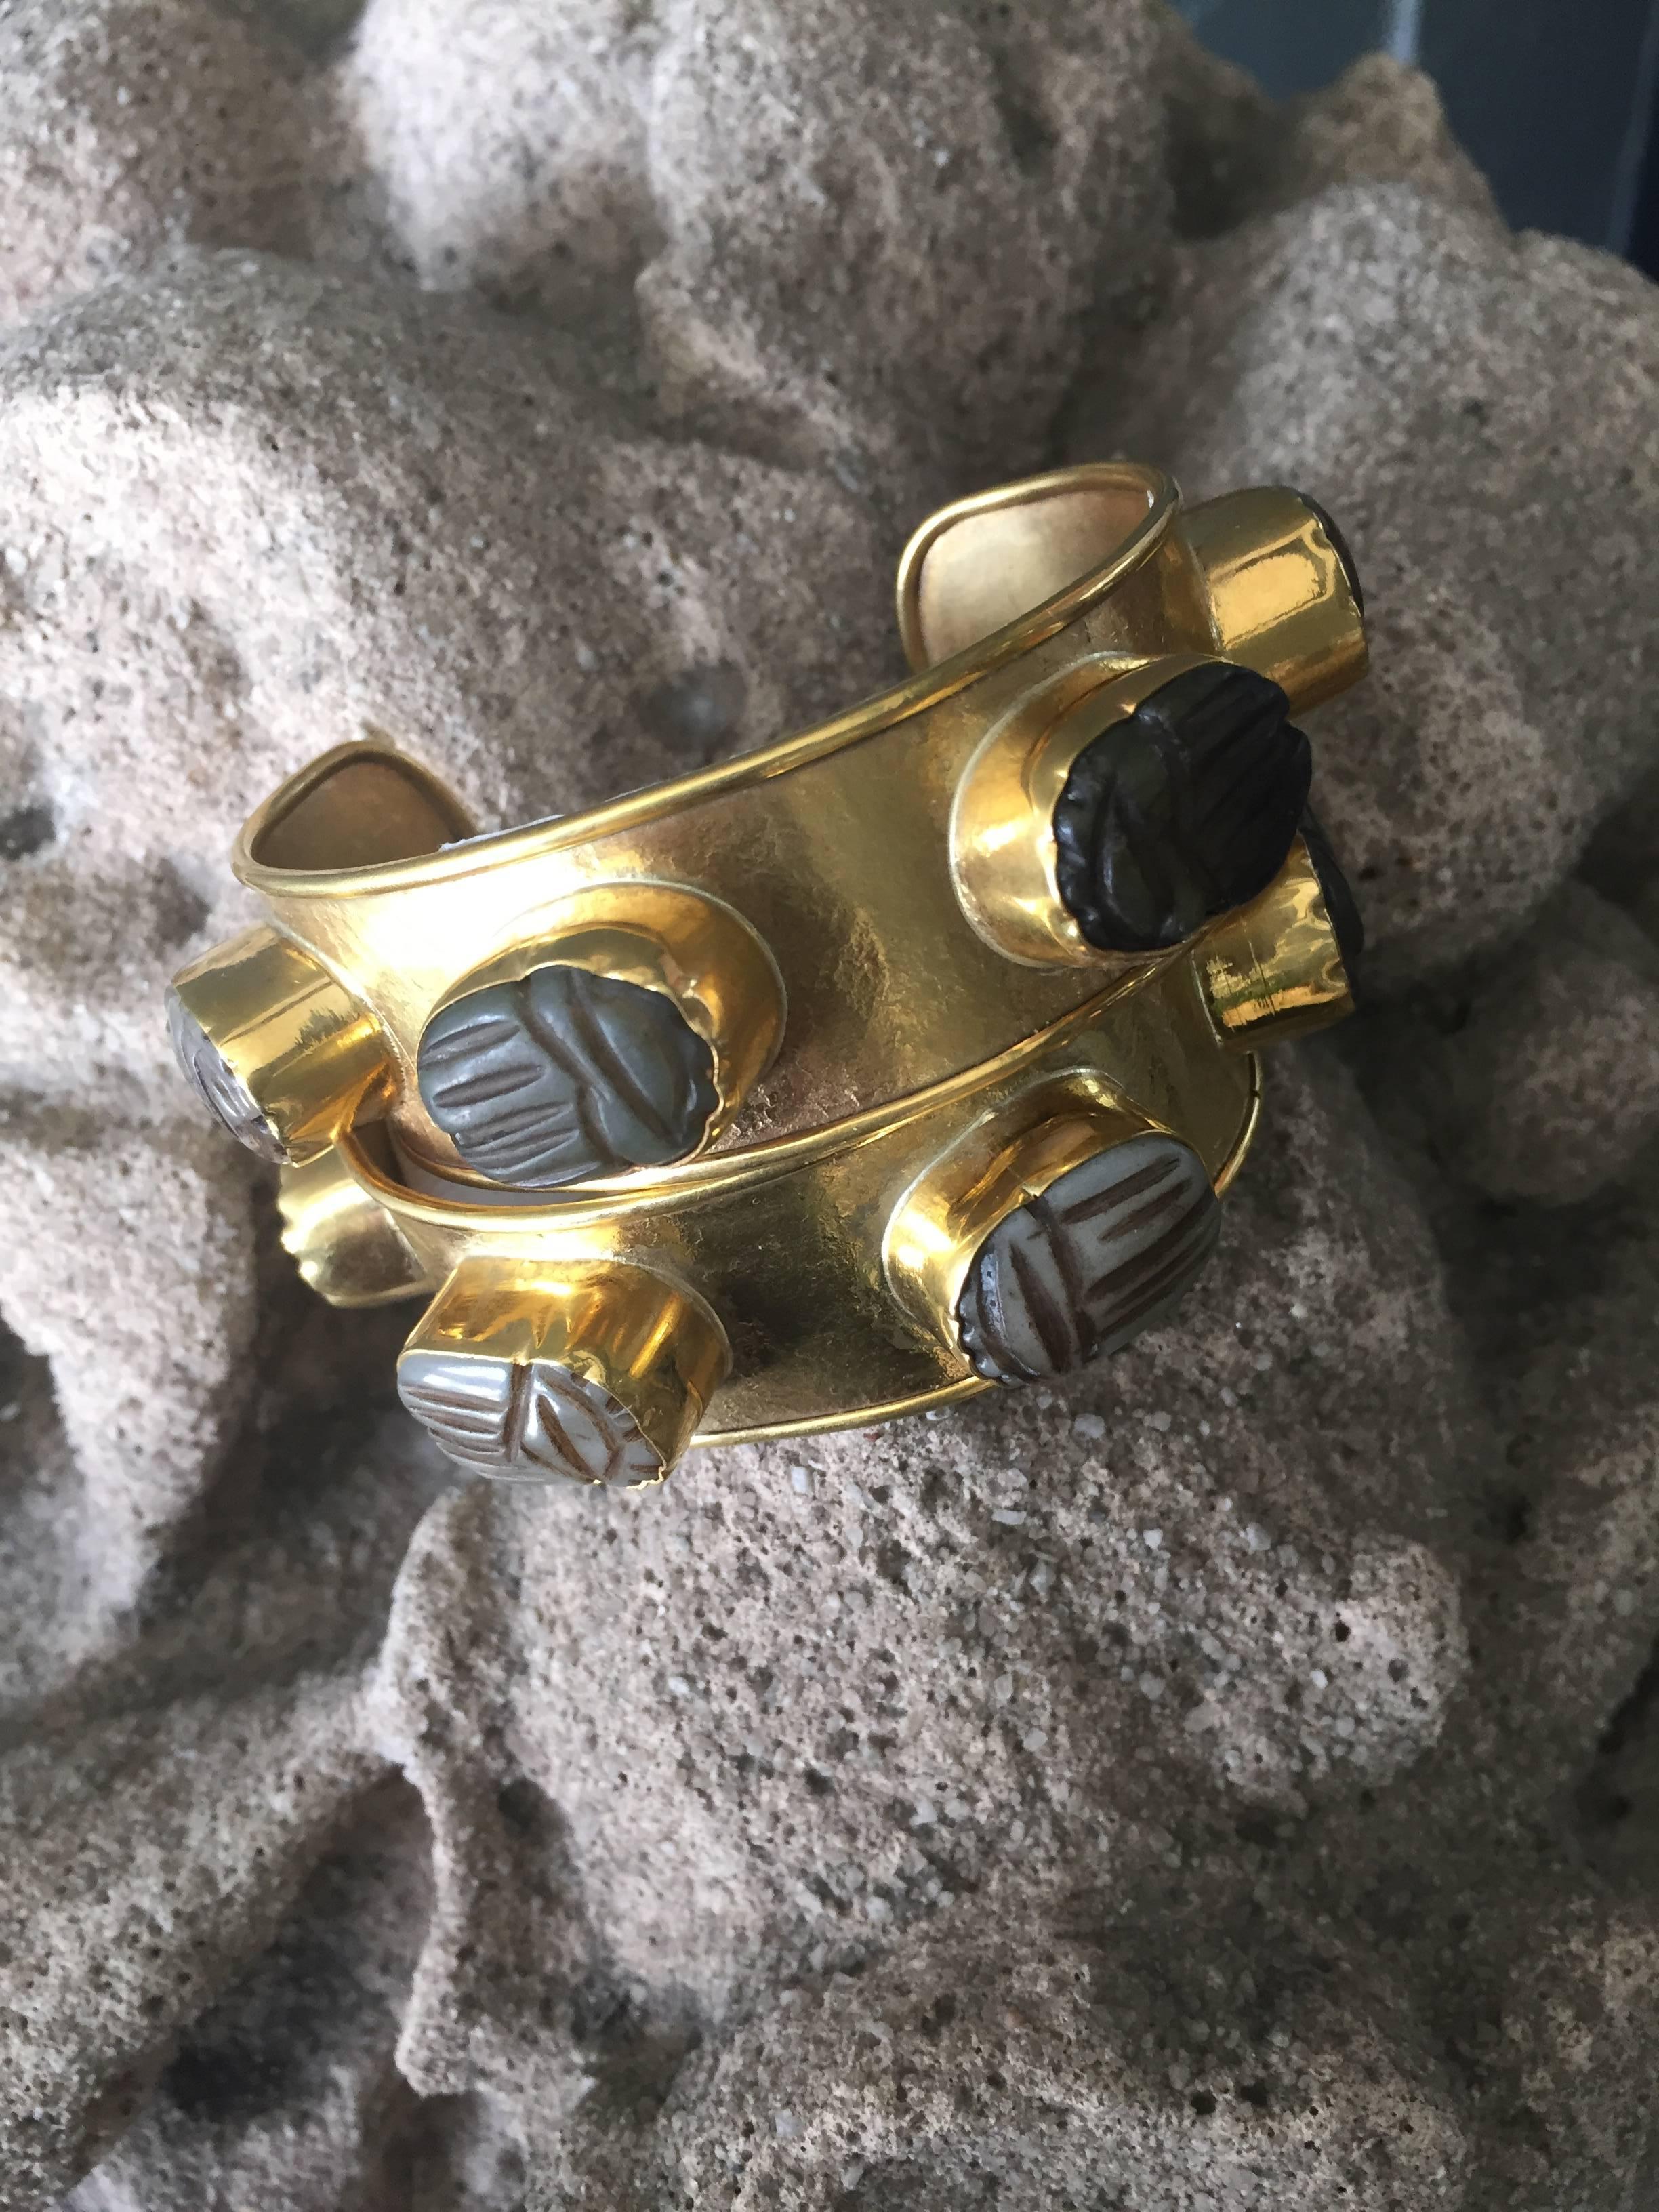 Pair of rock candy cuffs designed by Michelle Nussbaumer.
22-karat gold over bronze.
  